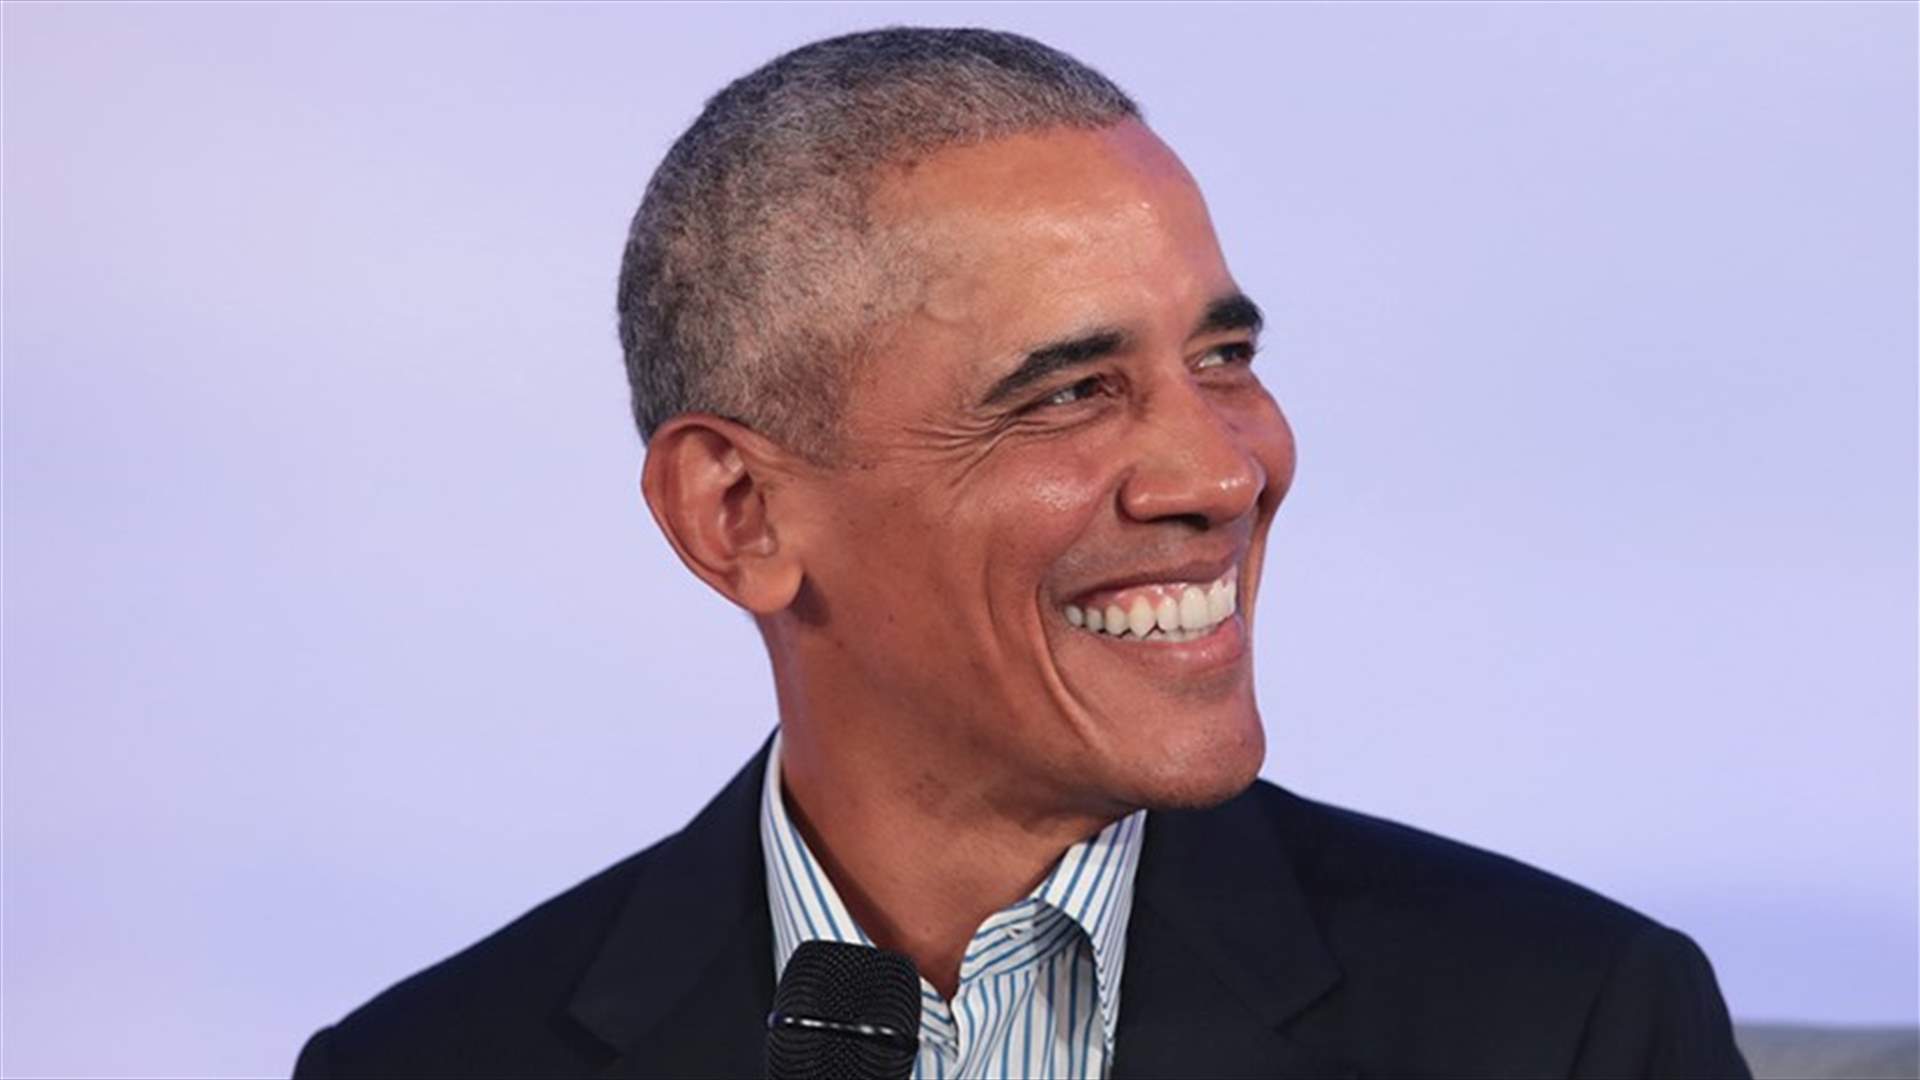 مغني راب شهير سيجسّد شخصية باراك أوباما في فيلم سينمائي... فكيف علّق الرئيس السابق؟